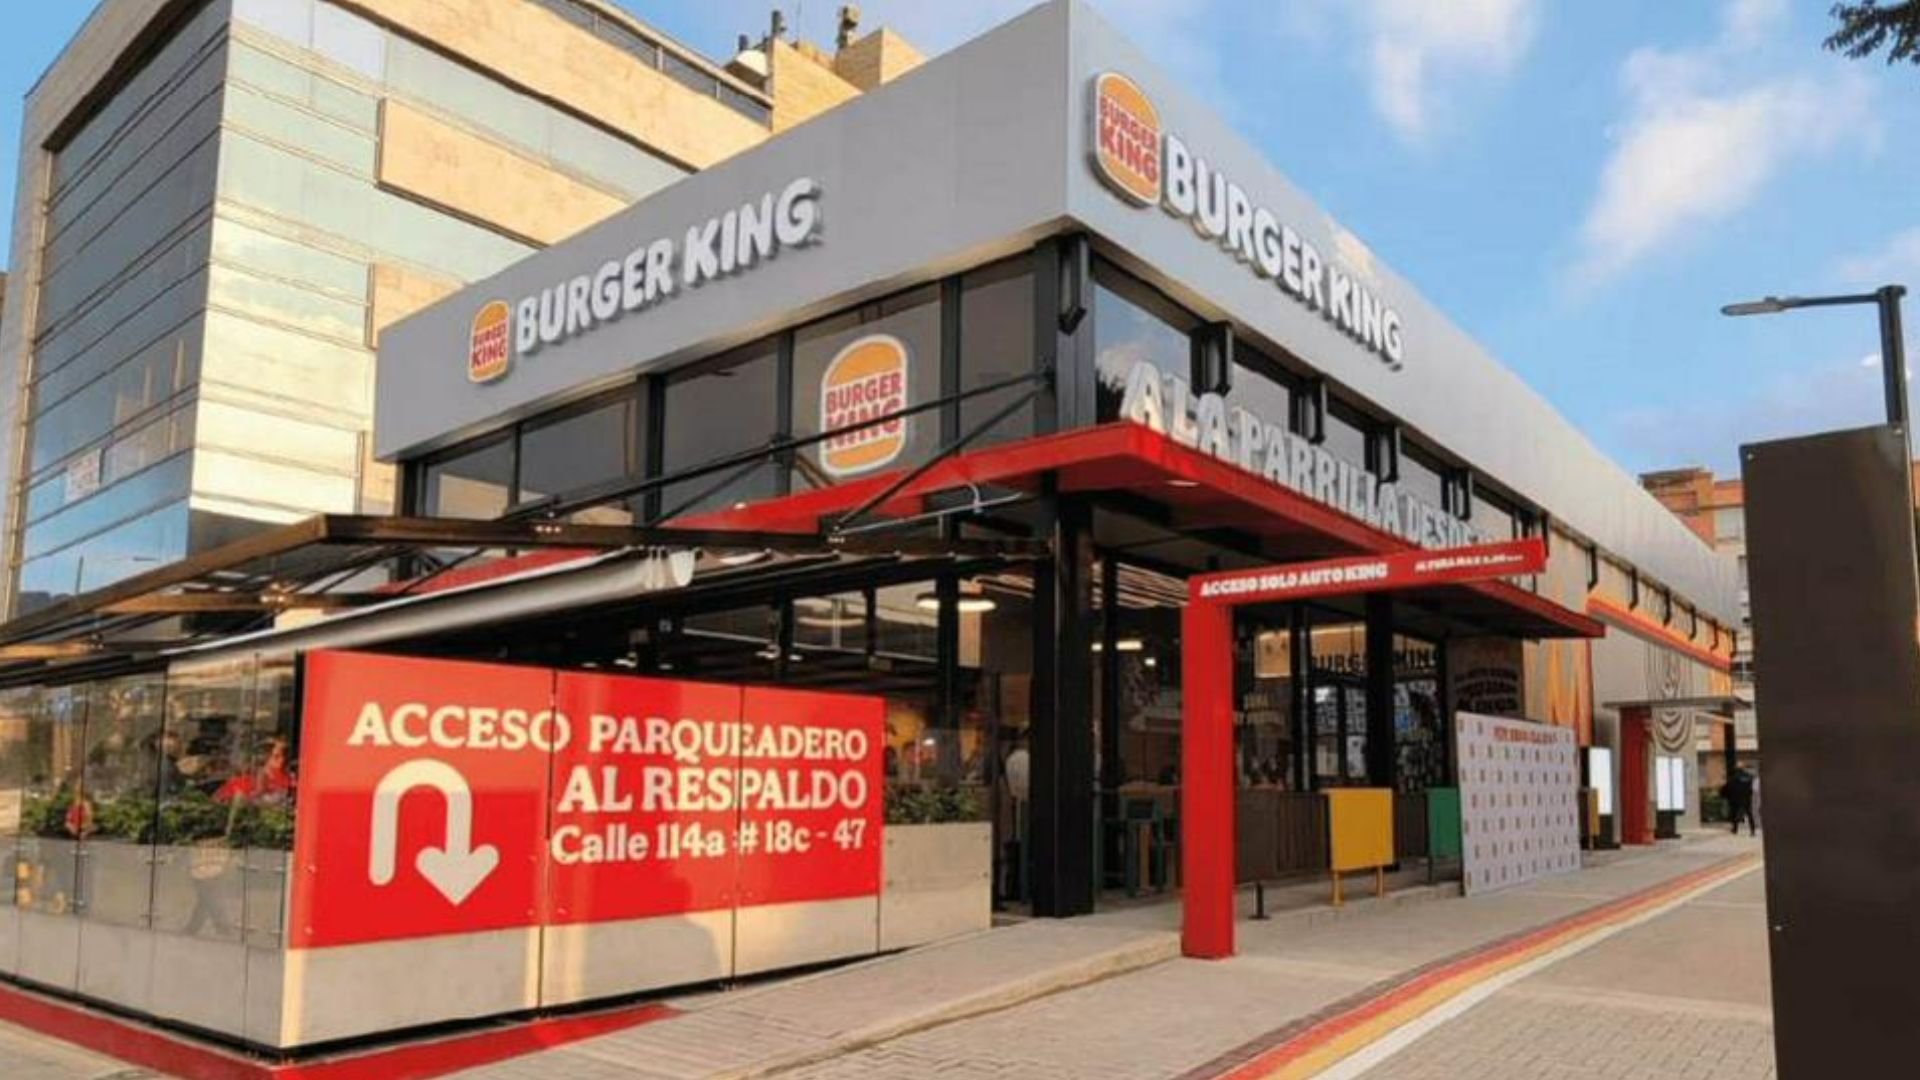 Burger King Colombia anuncia descuentos del 30 y 40 % en hamburguesas y combos